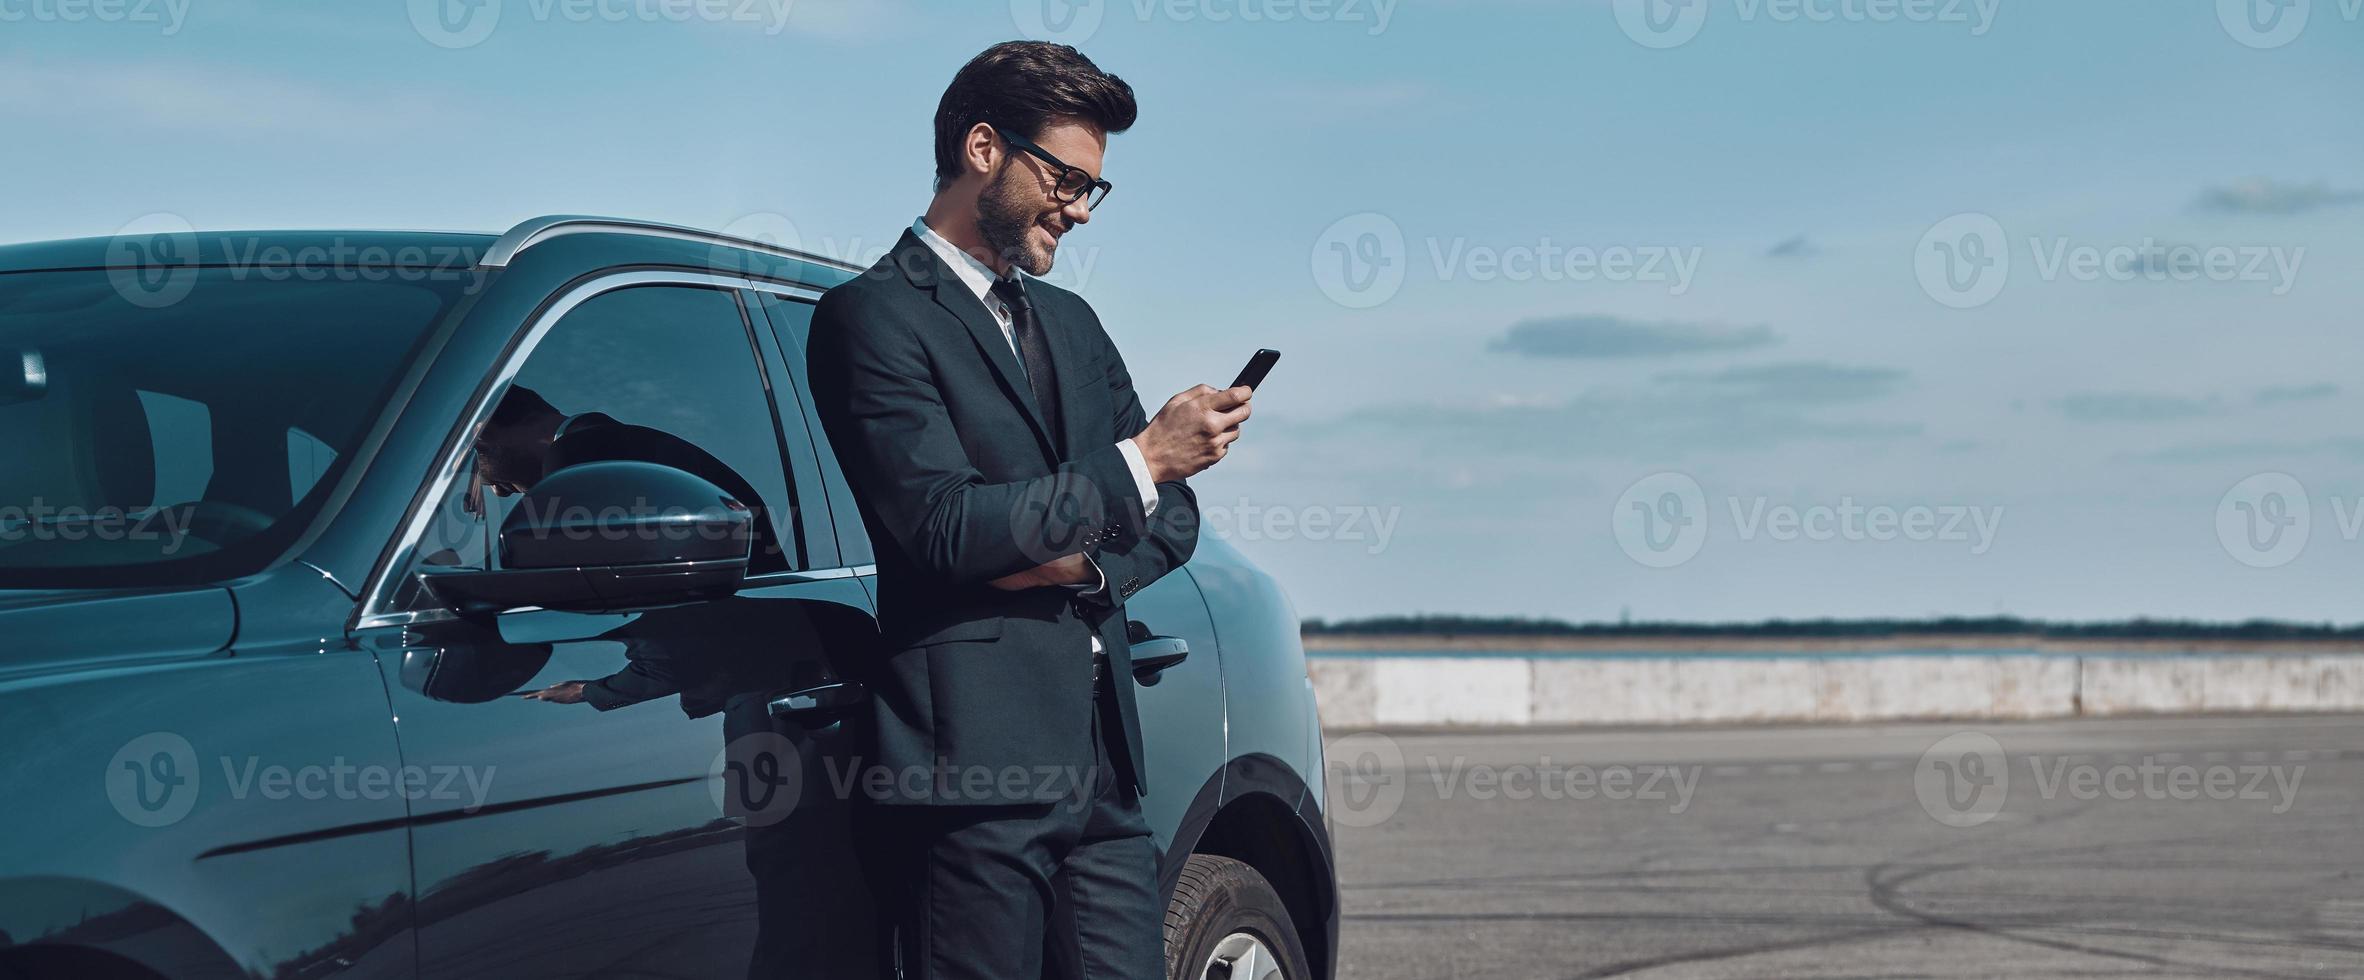 selbstbewusster Manager. in voller Länge von einem hübschen jungen Geschäftsmann, der ein Smartphone verwendet, während er im Freien in der Nähe seines Autos steht foto